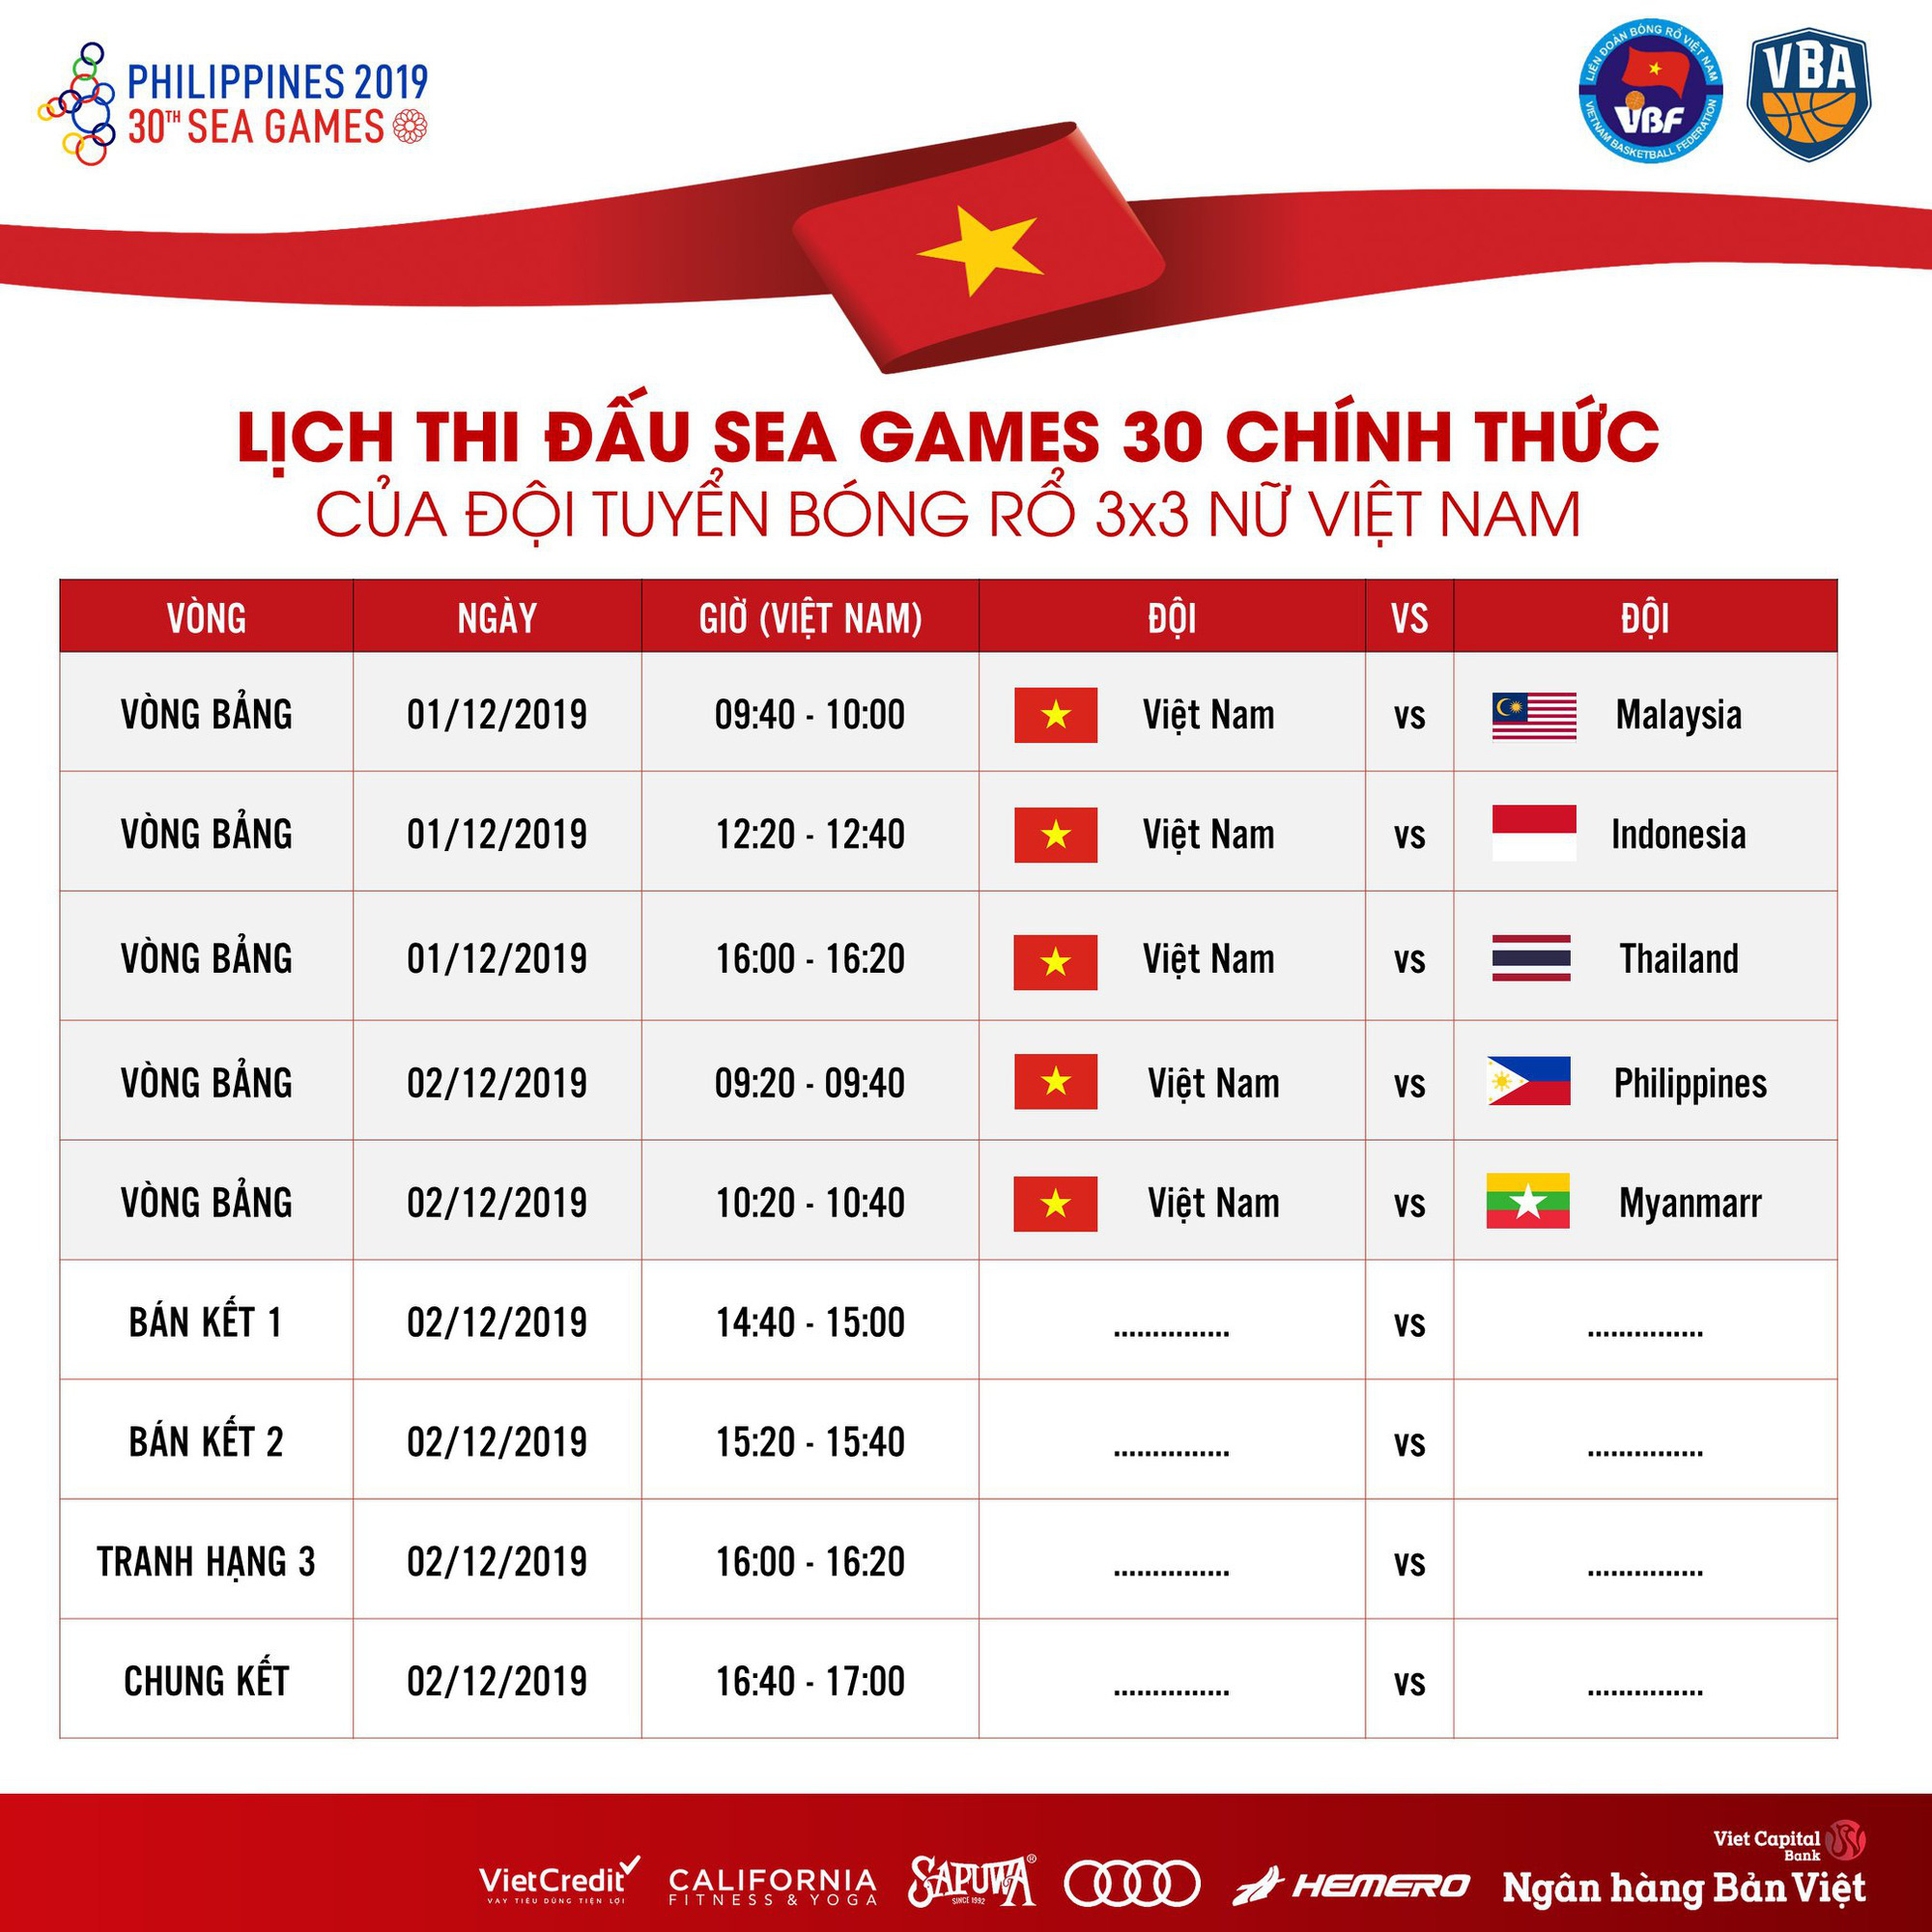 Đội tuyển bóng rổ 3x3 Việt Nam lao vào tập luyện buổi duy nhất sau chuyến bay cực hình tới Philippines - Ảnh 9.